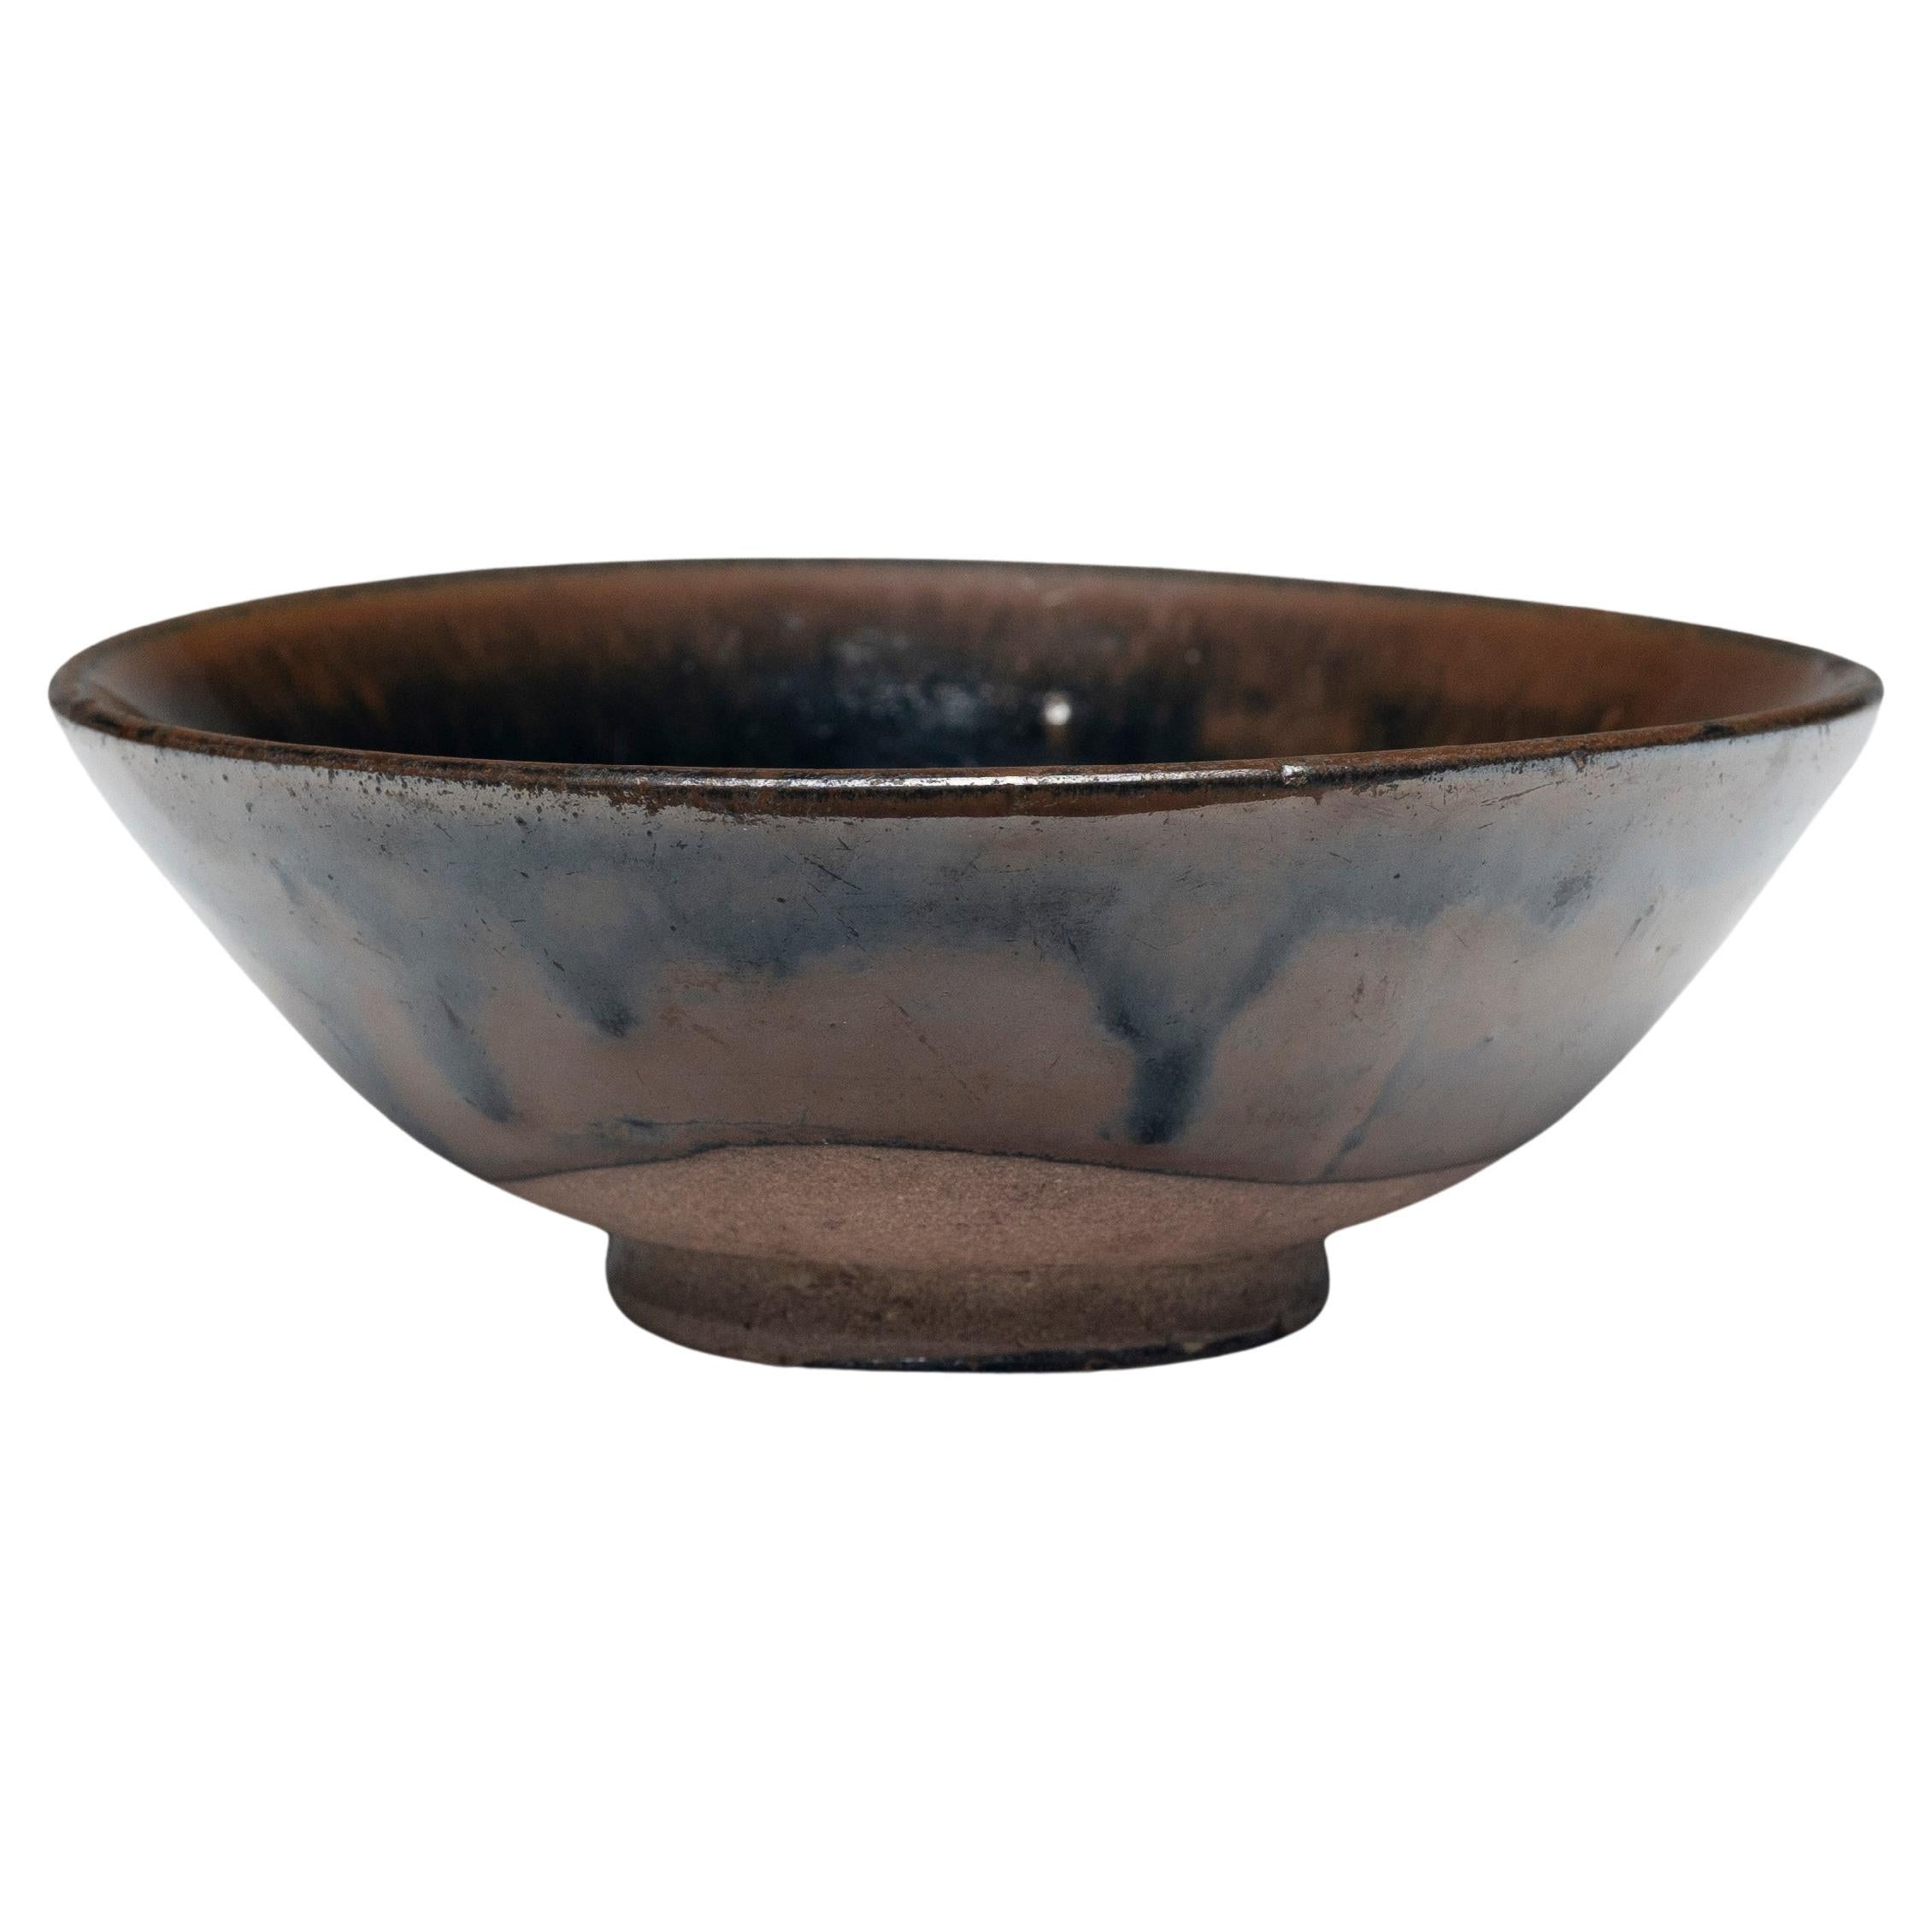 Dark Glazed Chinese Rice Bowl, c. 1850